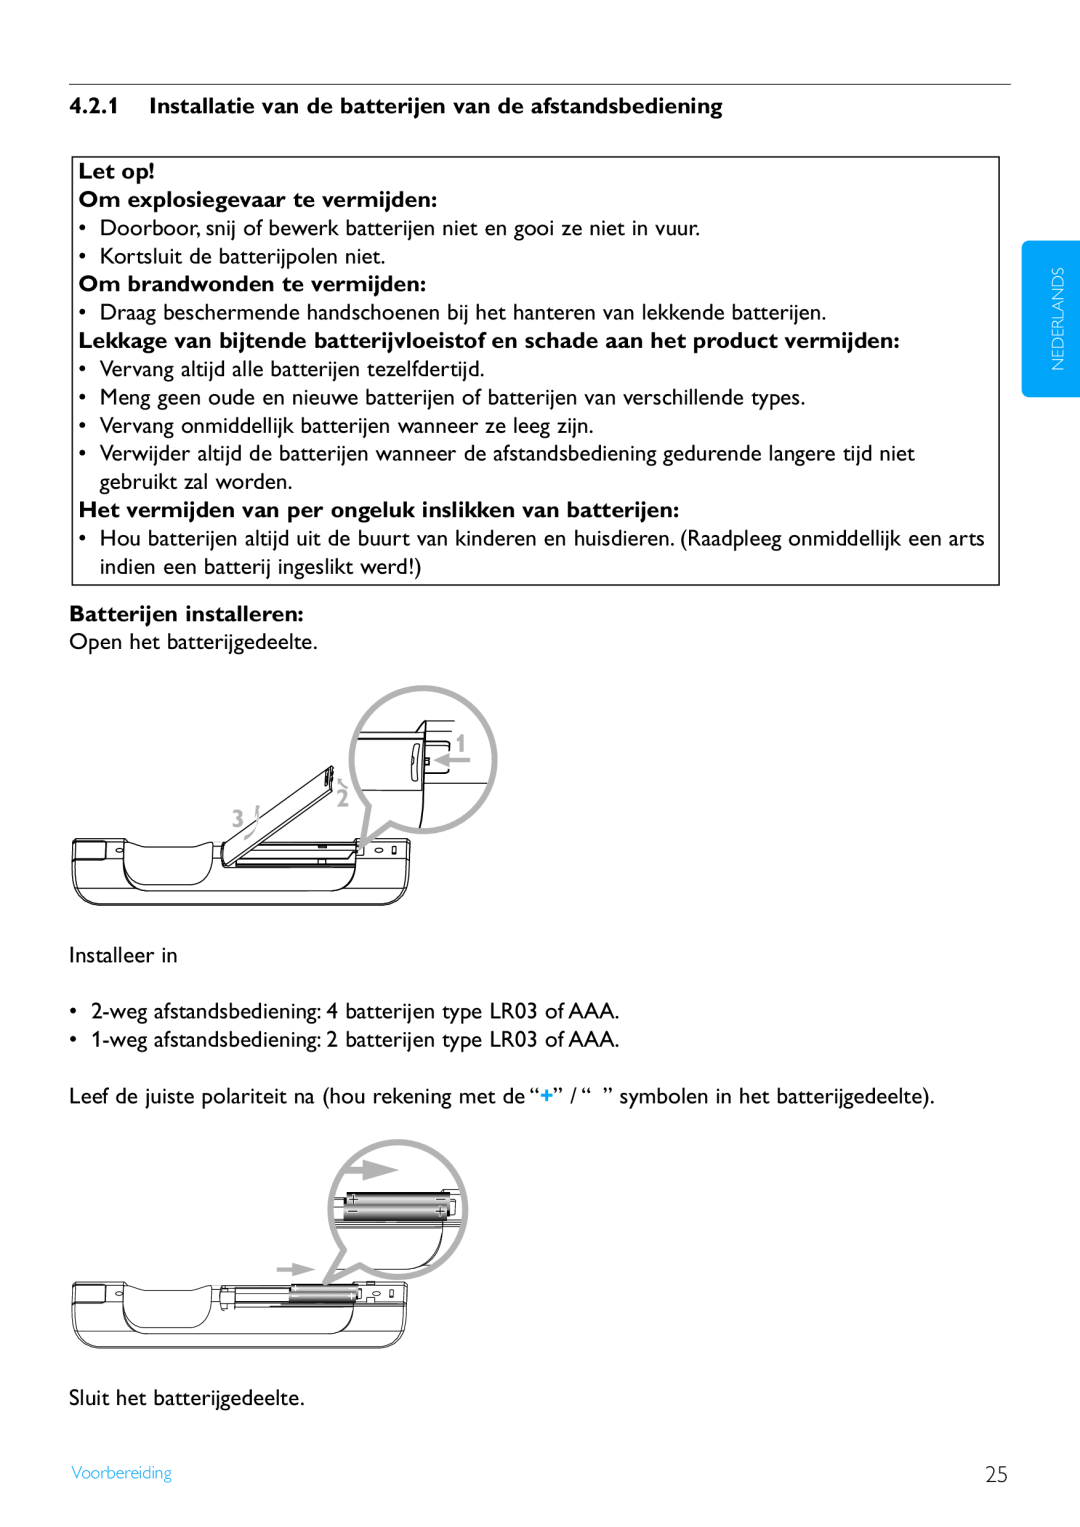 Philips WACS7500 manual Let op Om explosiegevaar te vermijden, Om brandwonden te vermijden, Batterijen installeren 